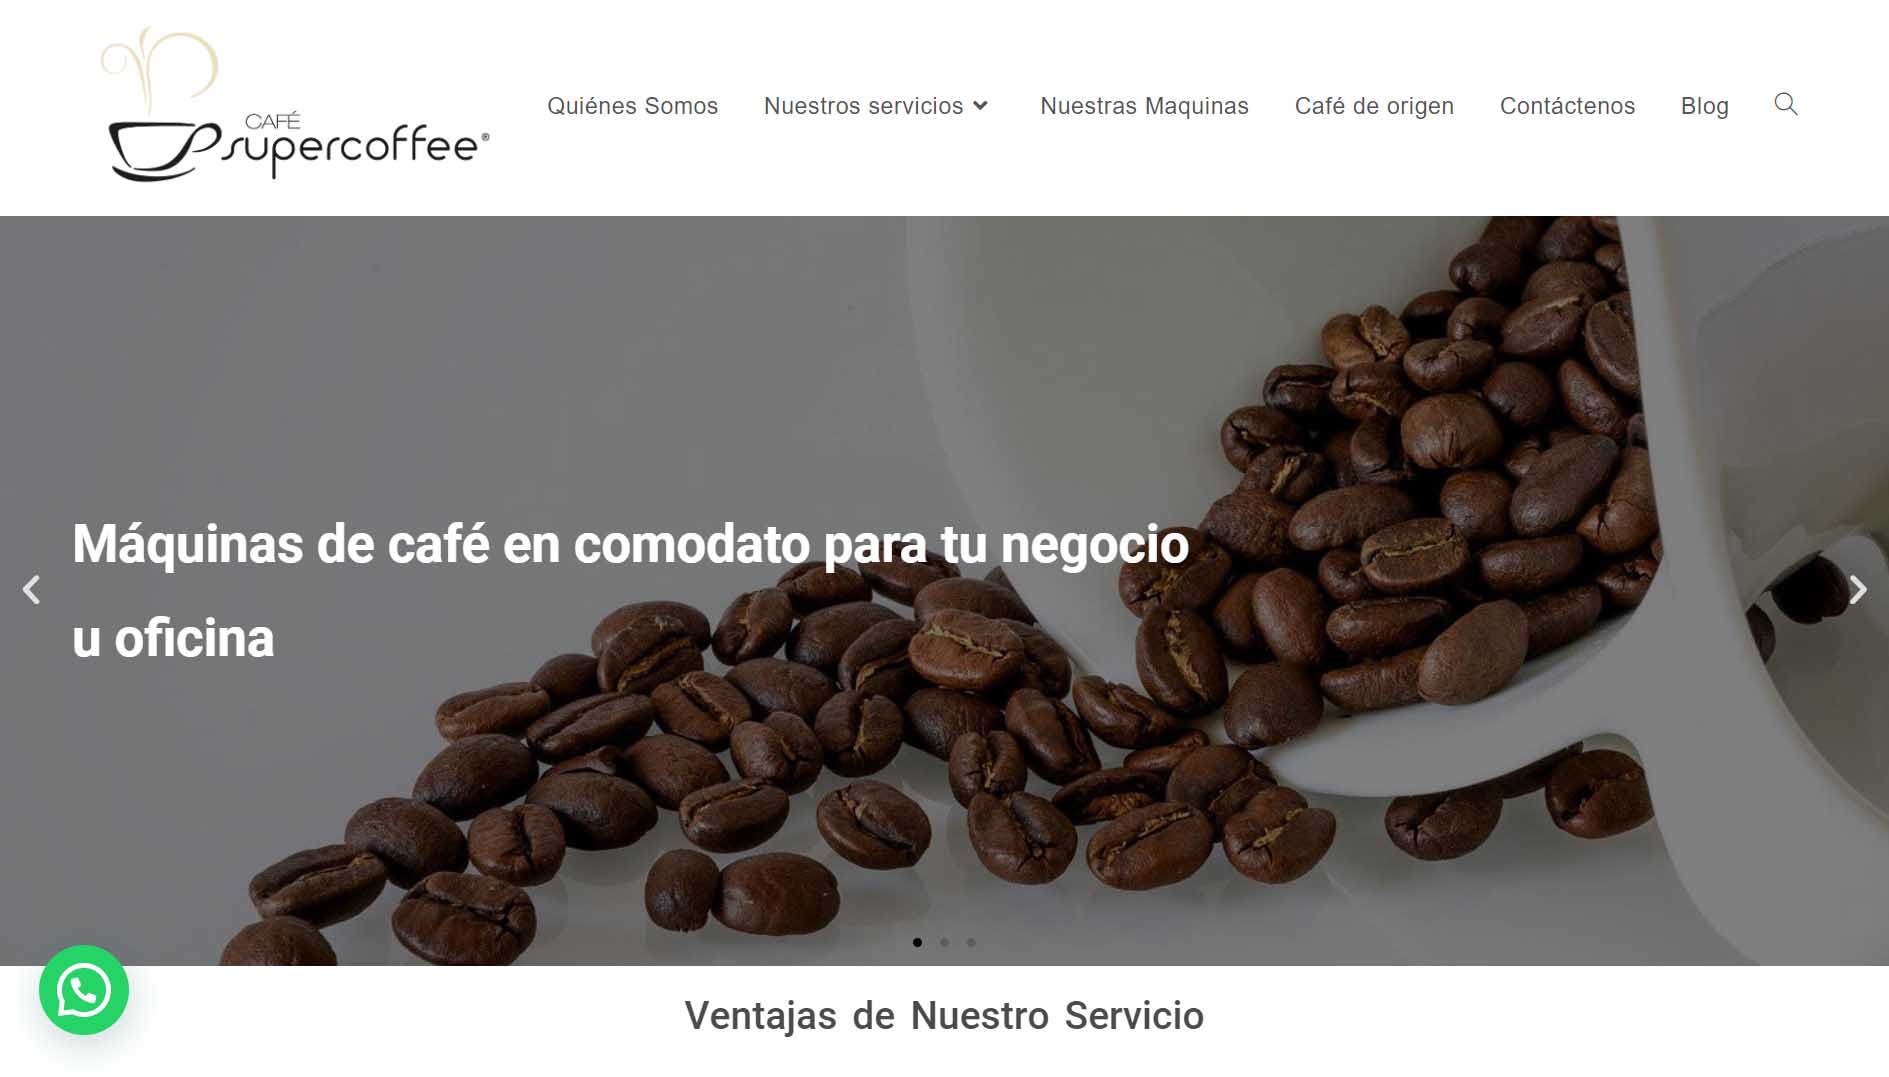 franquicias en Colombia - ejemplos: Supercoffee